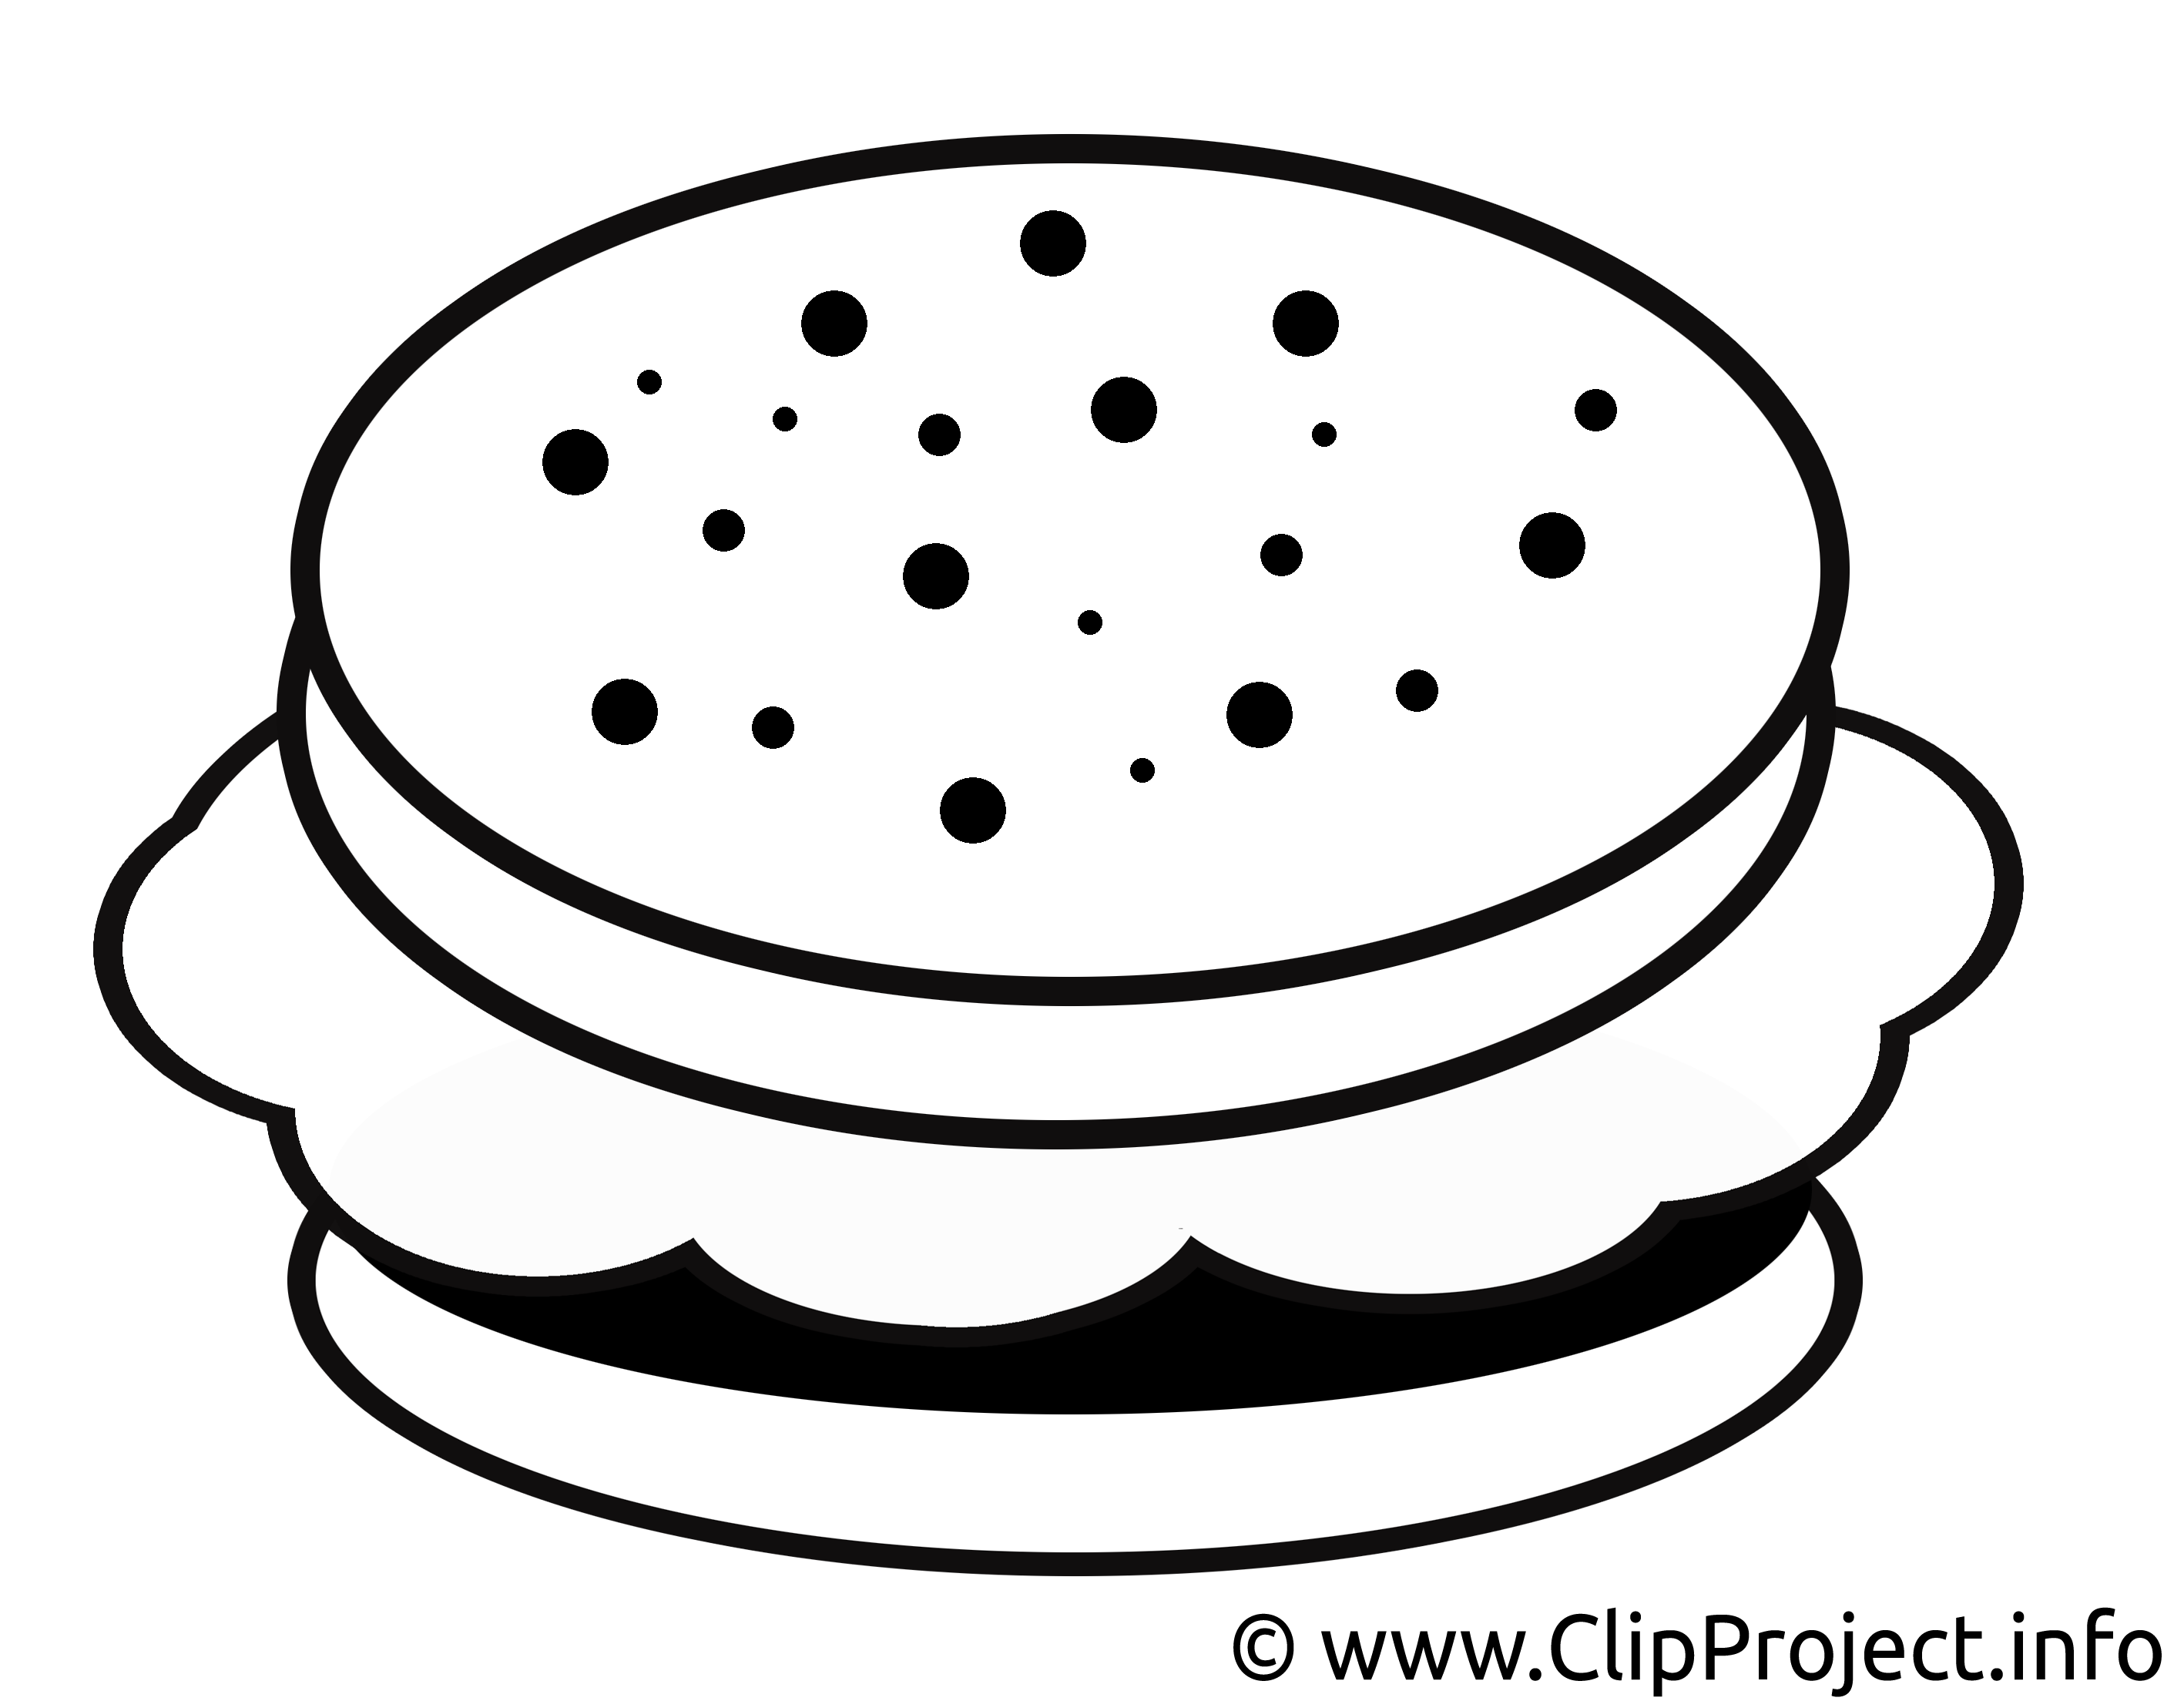 Hamburger dessins gratuits - Noir et blanc clipart